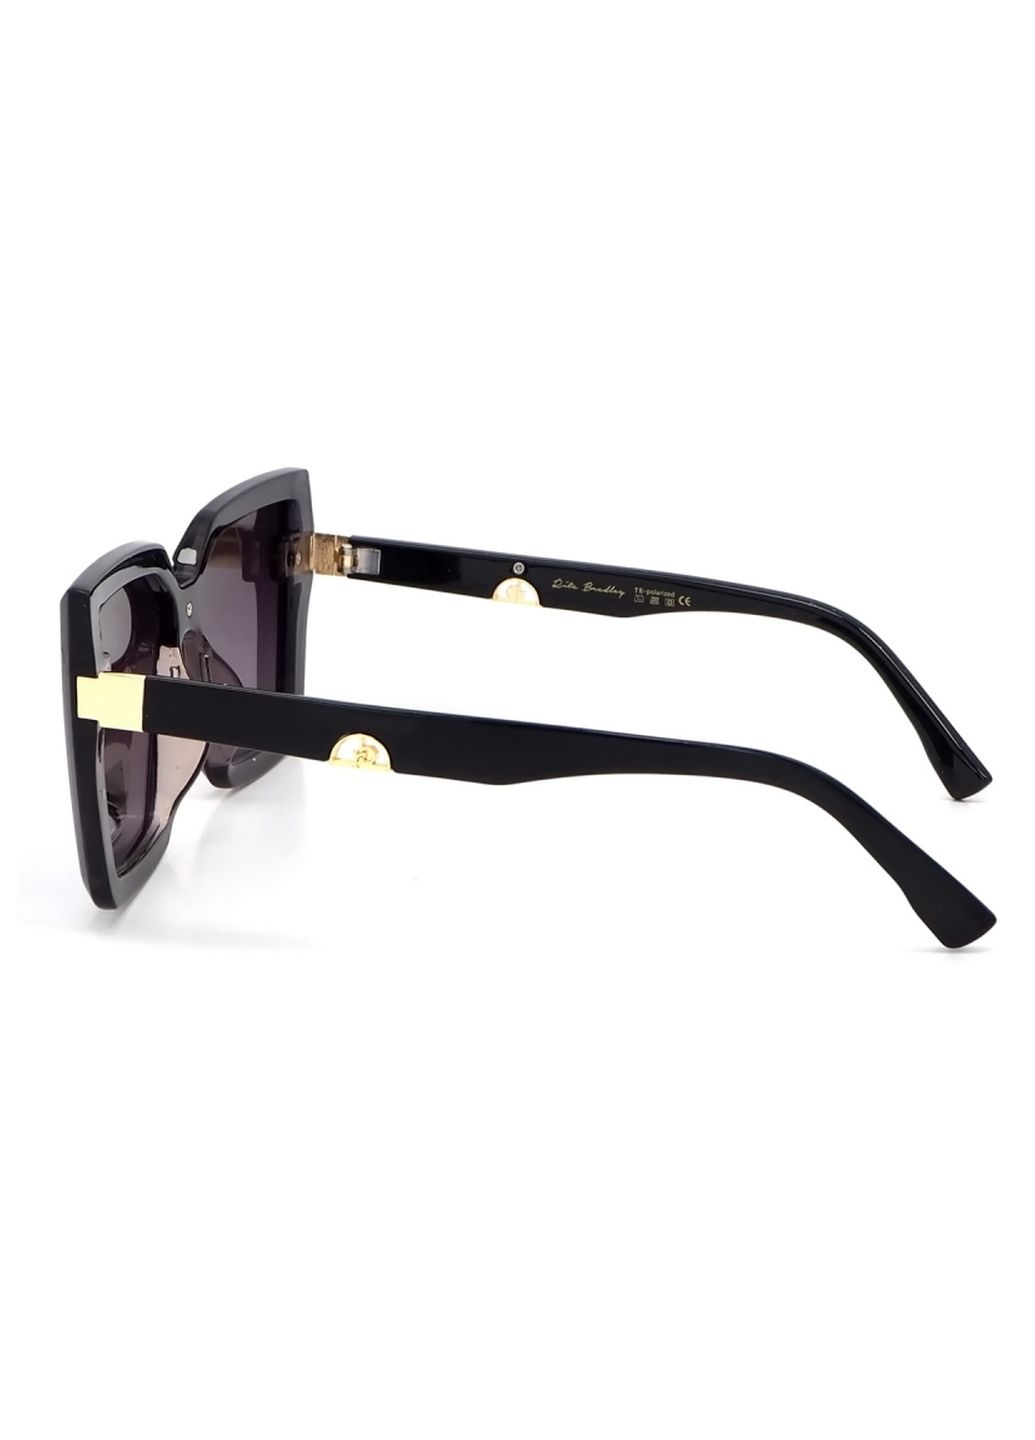 Купить Женские солнцезащитные очки Rita Bradley с поляризацией RB728 112064 в интернет-магазине